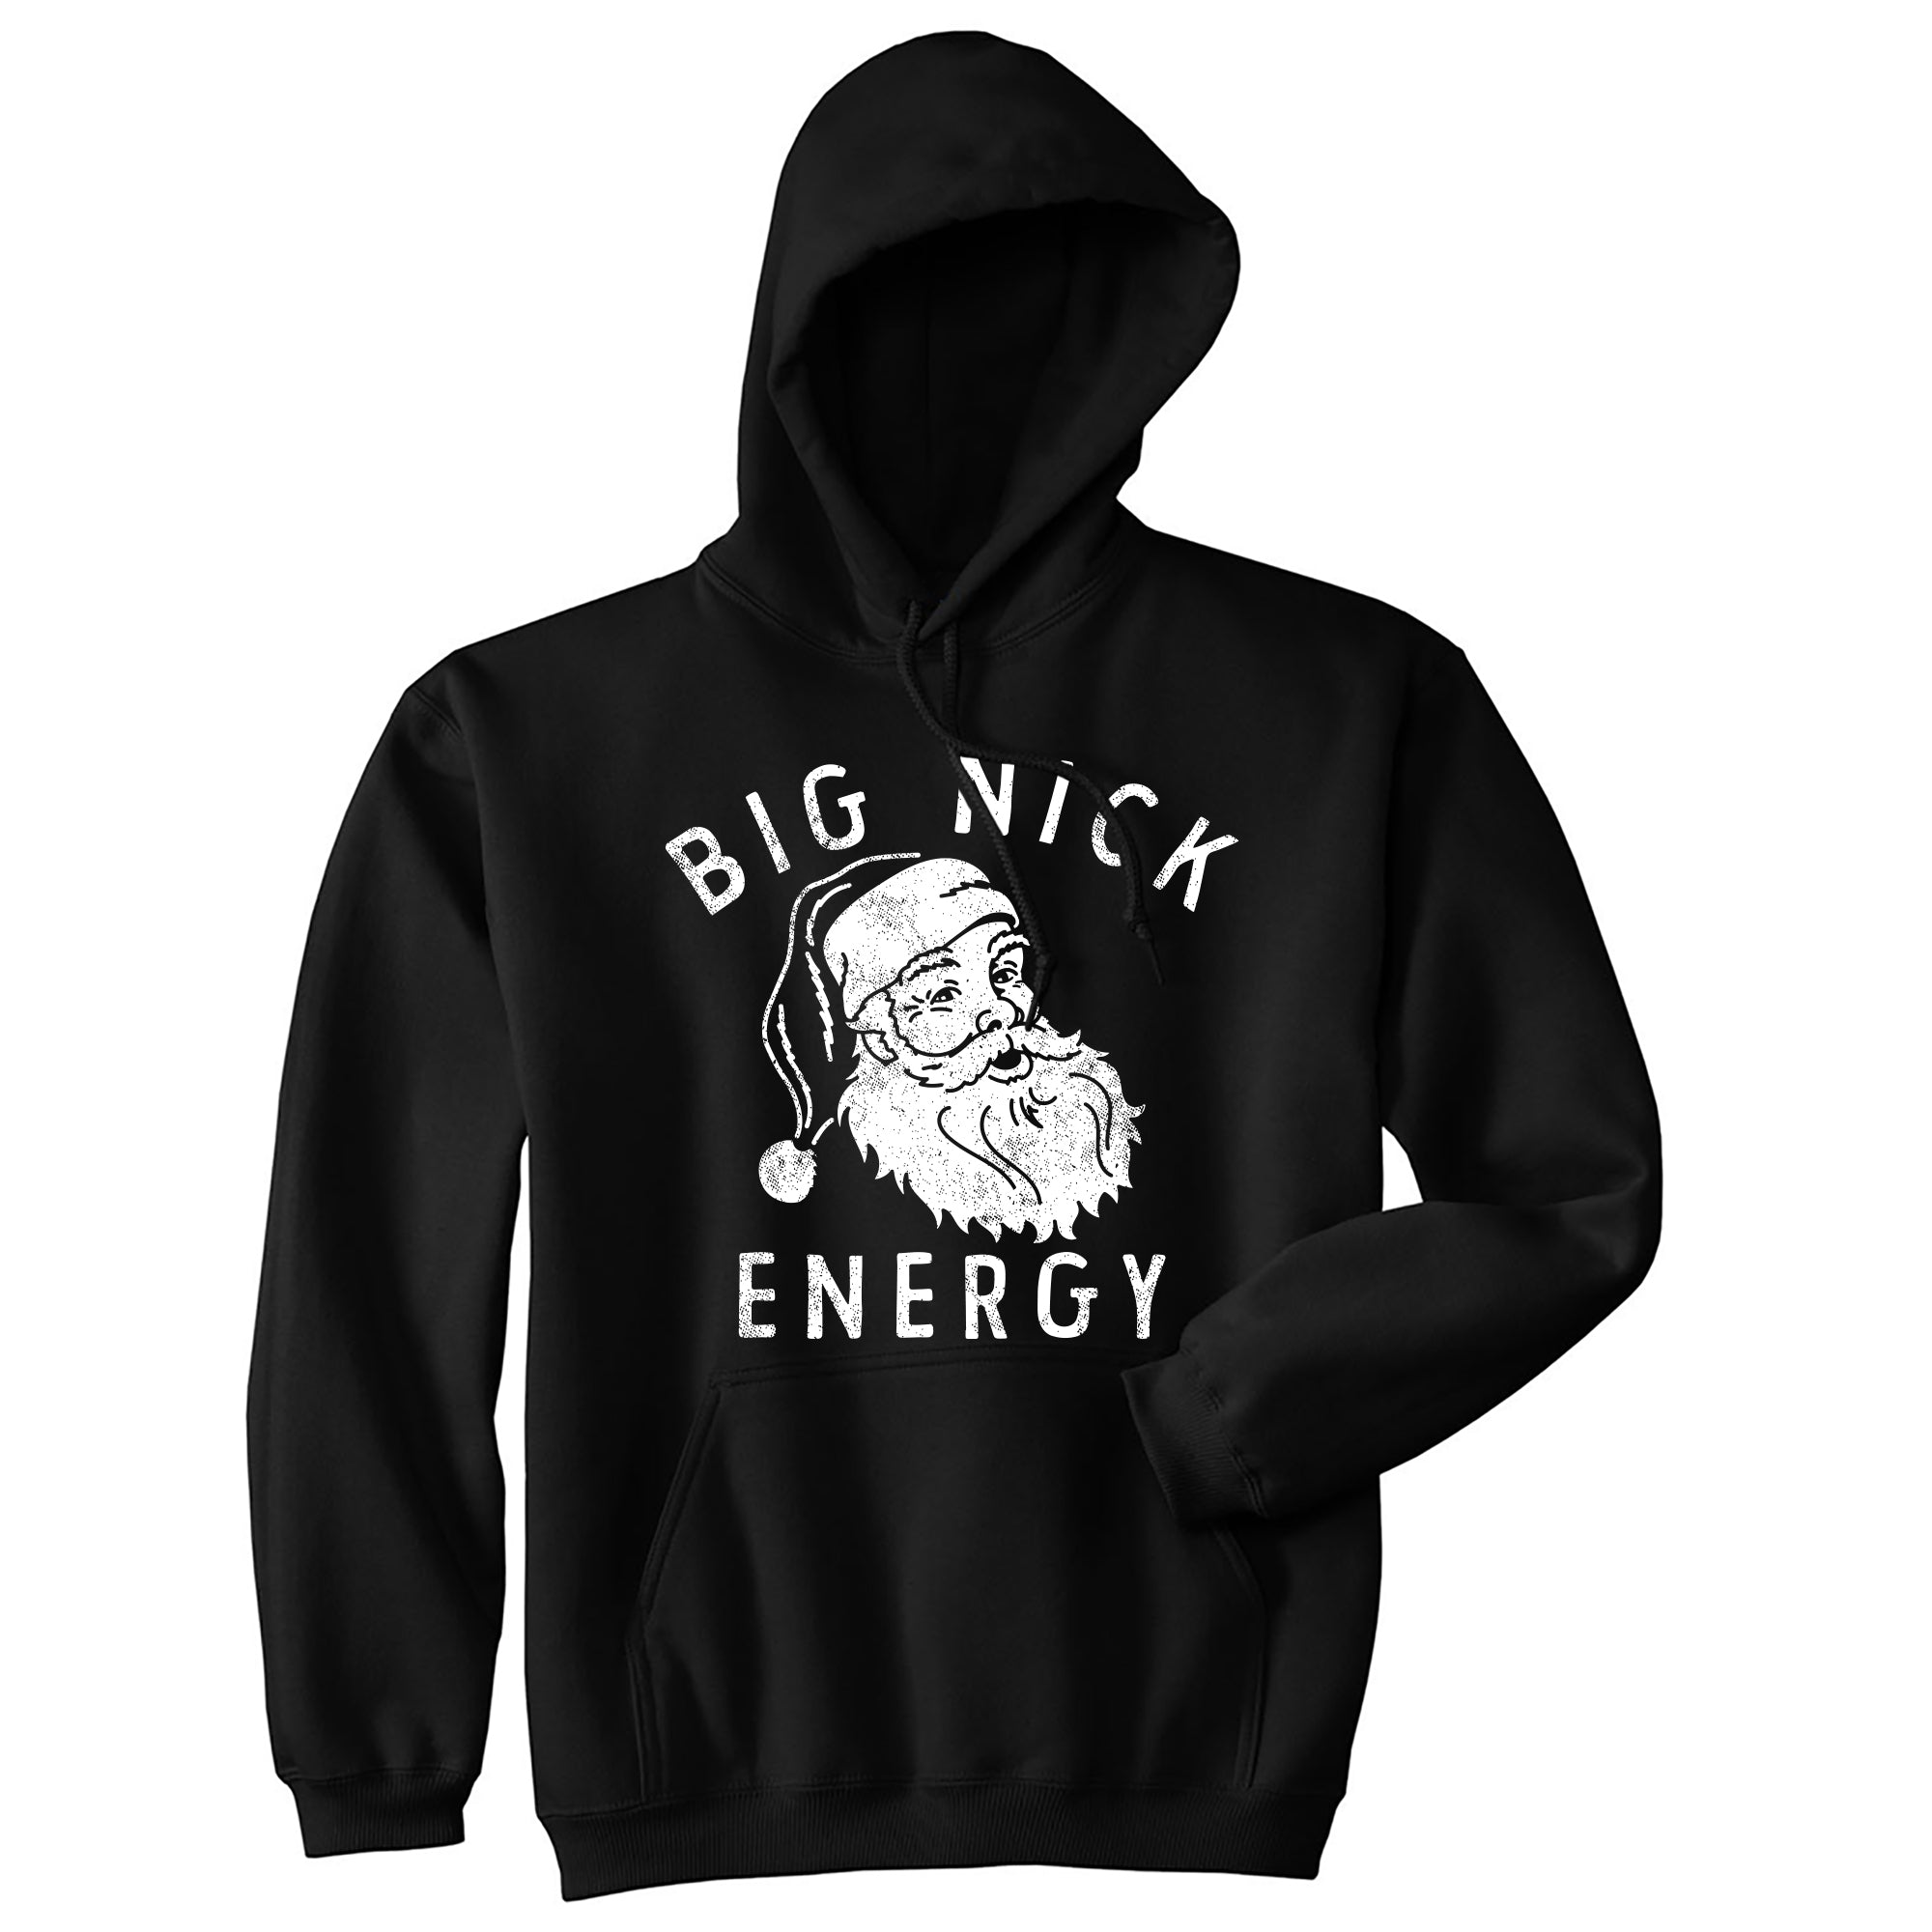 Funny Black - Big Nick 1 Color Big Nick Energy Hoodie Nerdy Christmas Tee